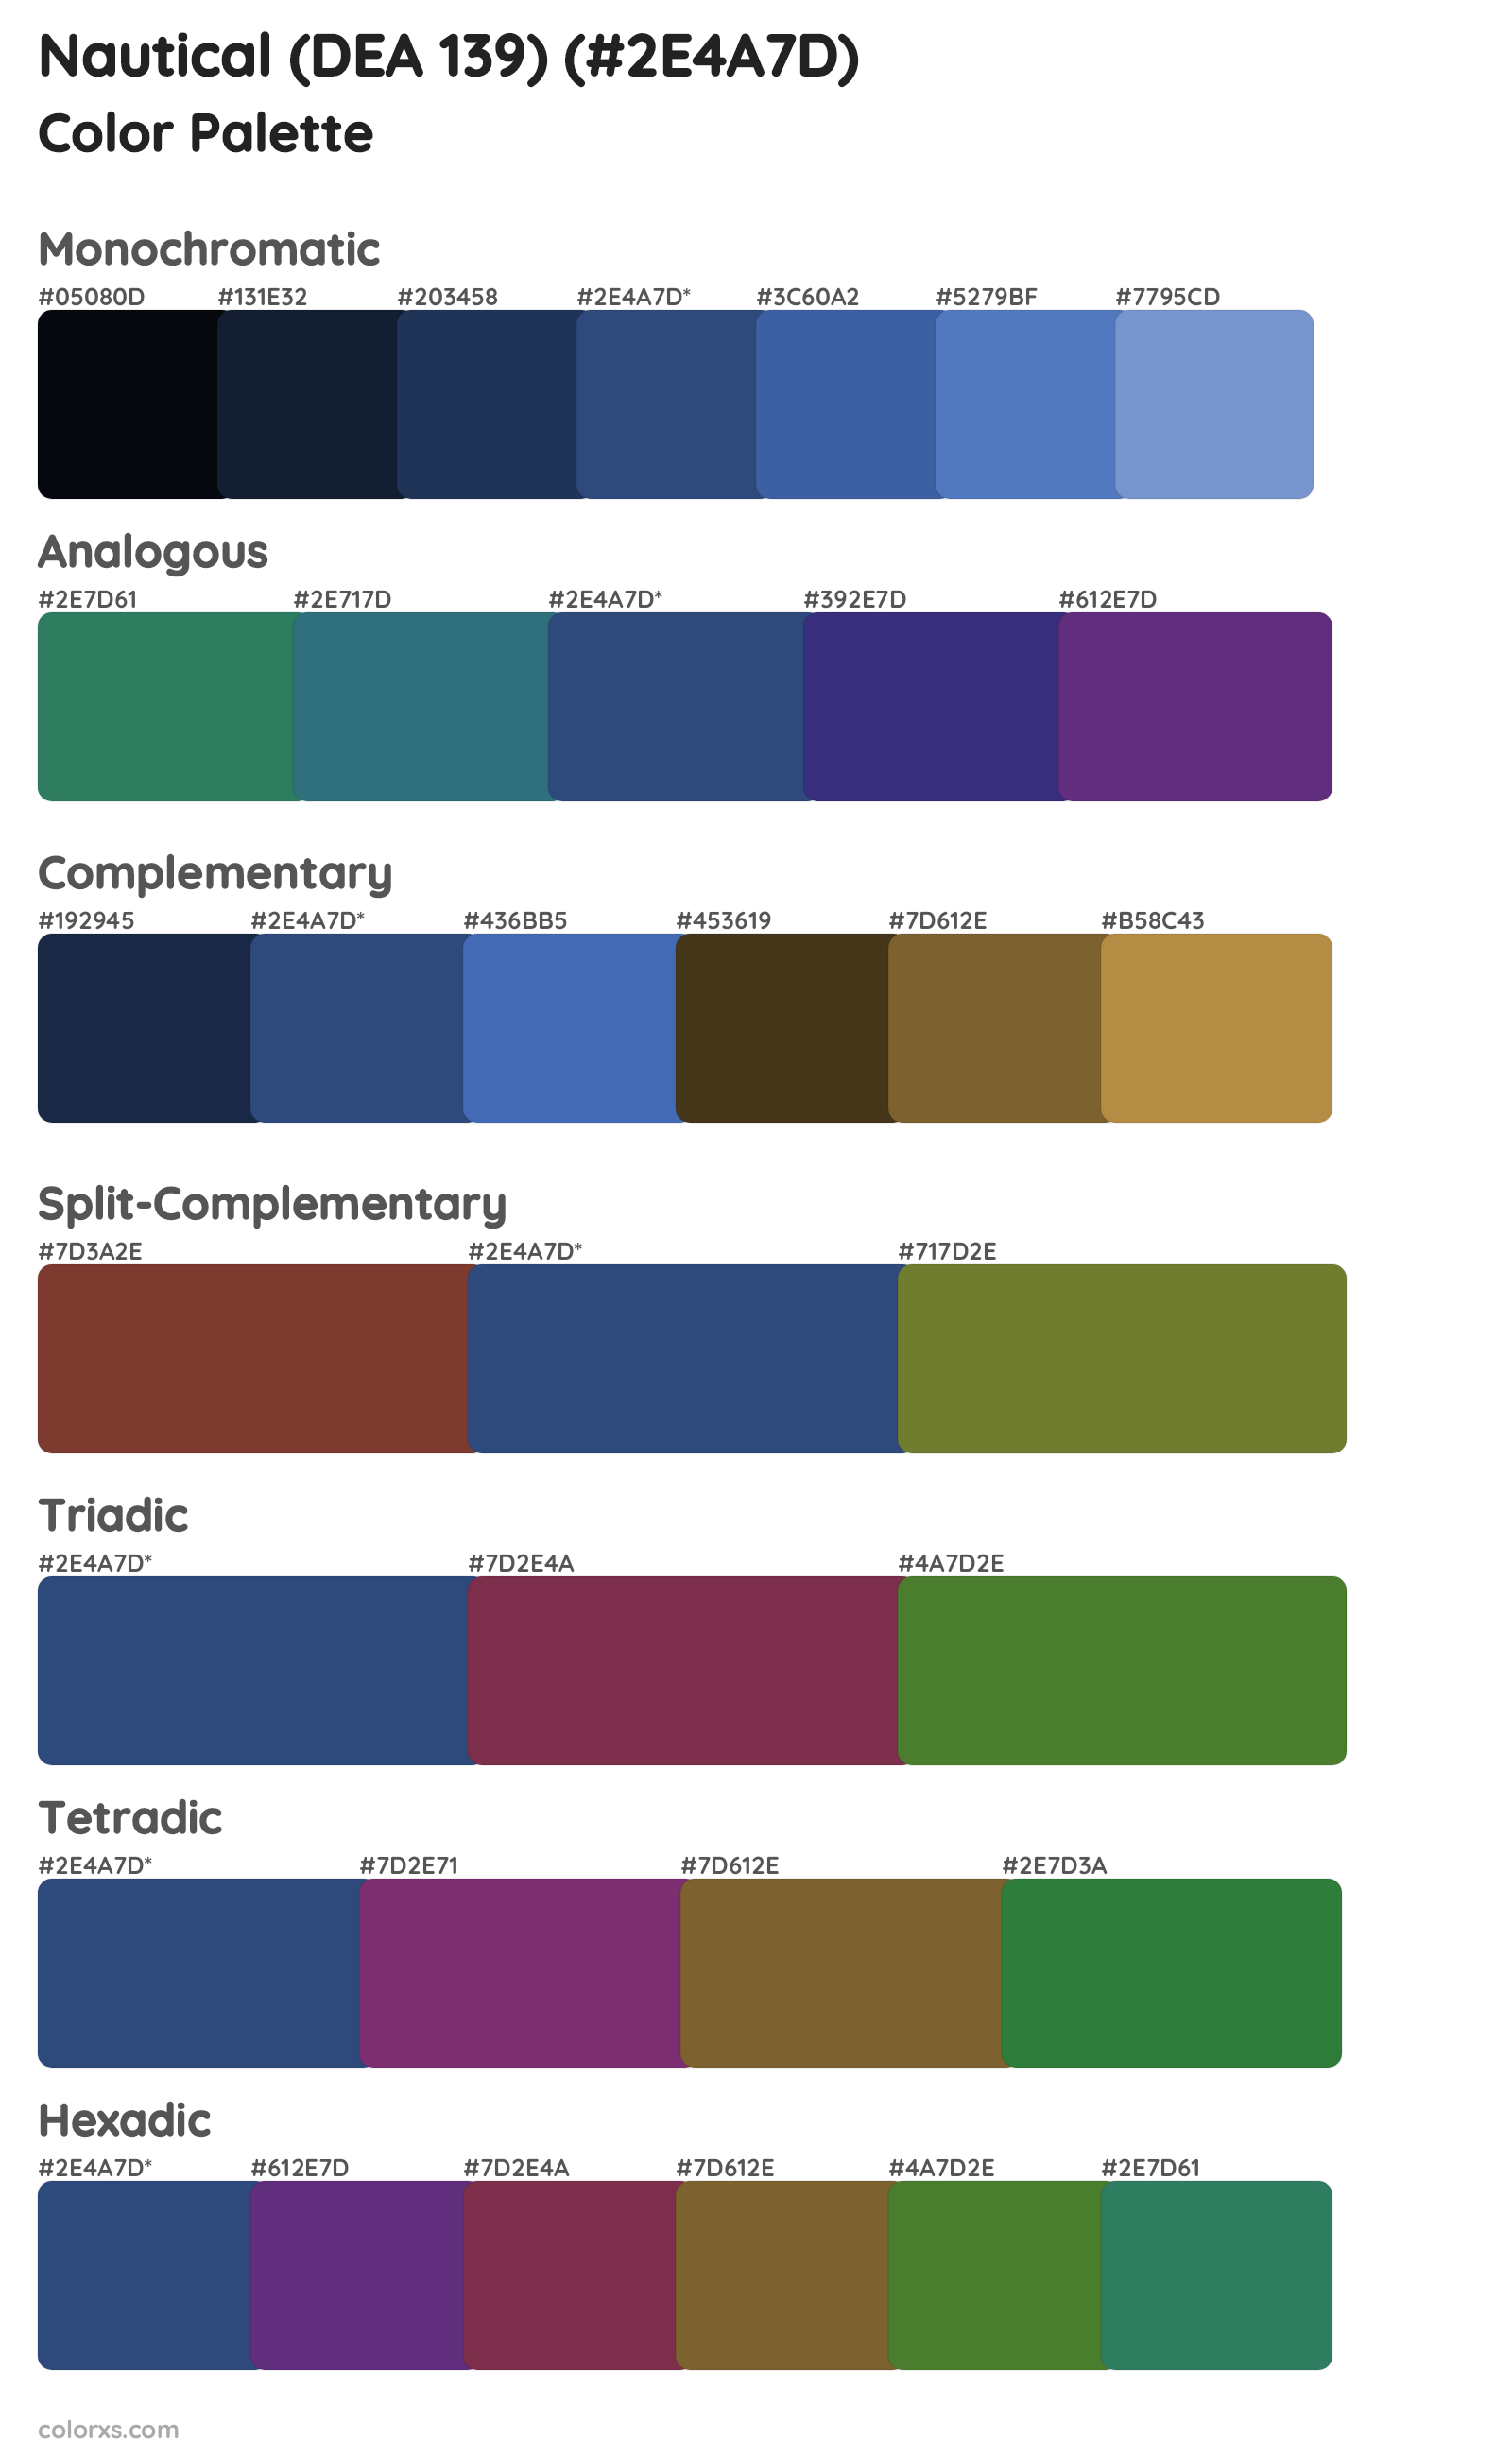 Nautical (DEA 139) Color Scheme Palettes